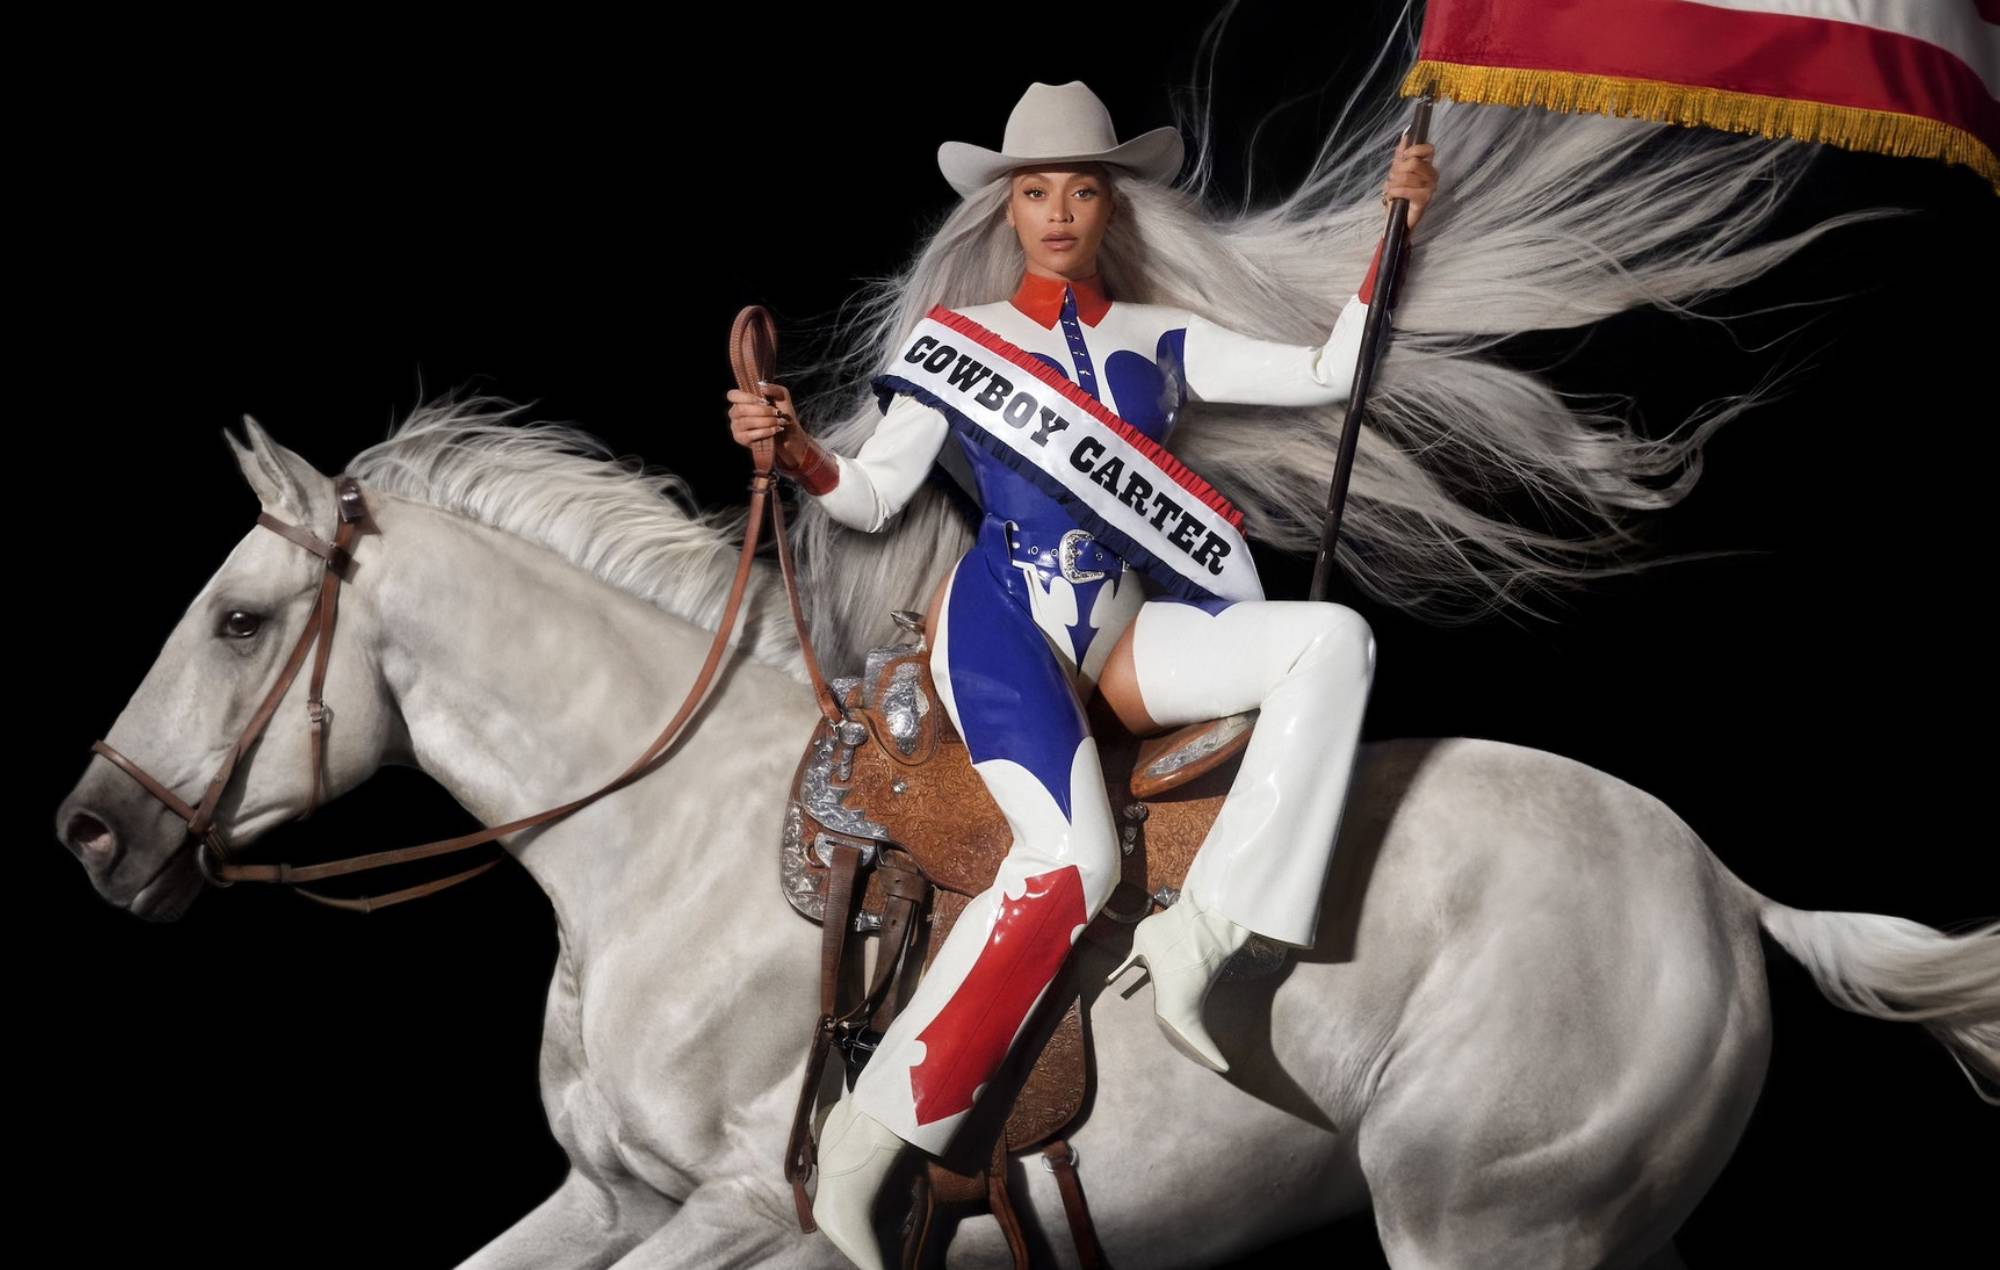 Beyoncé shares 'Cowboy Carter' album artwork and responds to backlash over country music